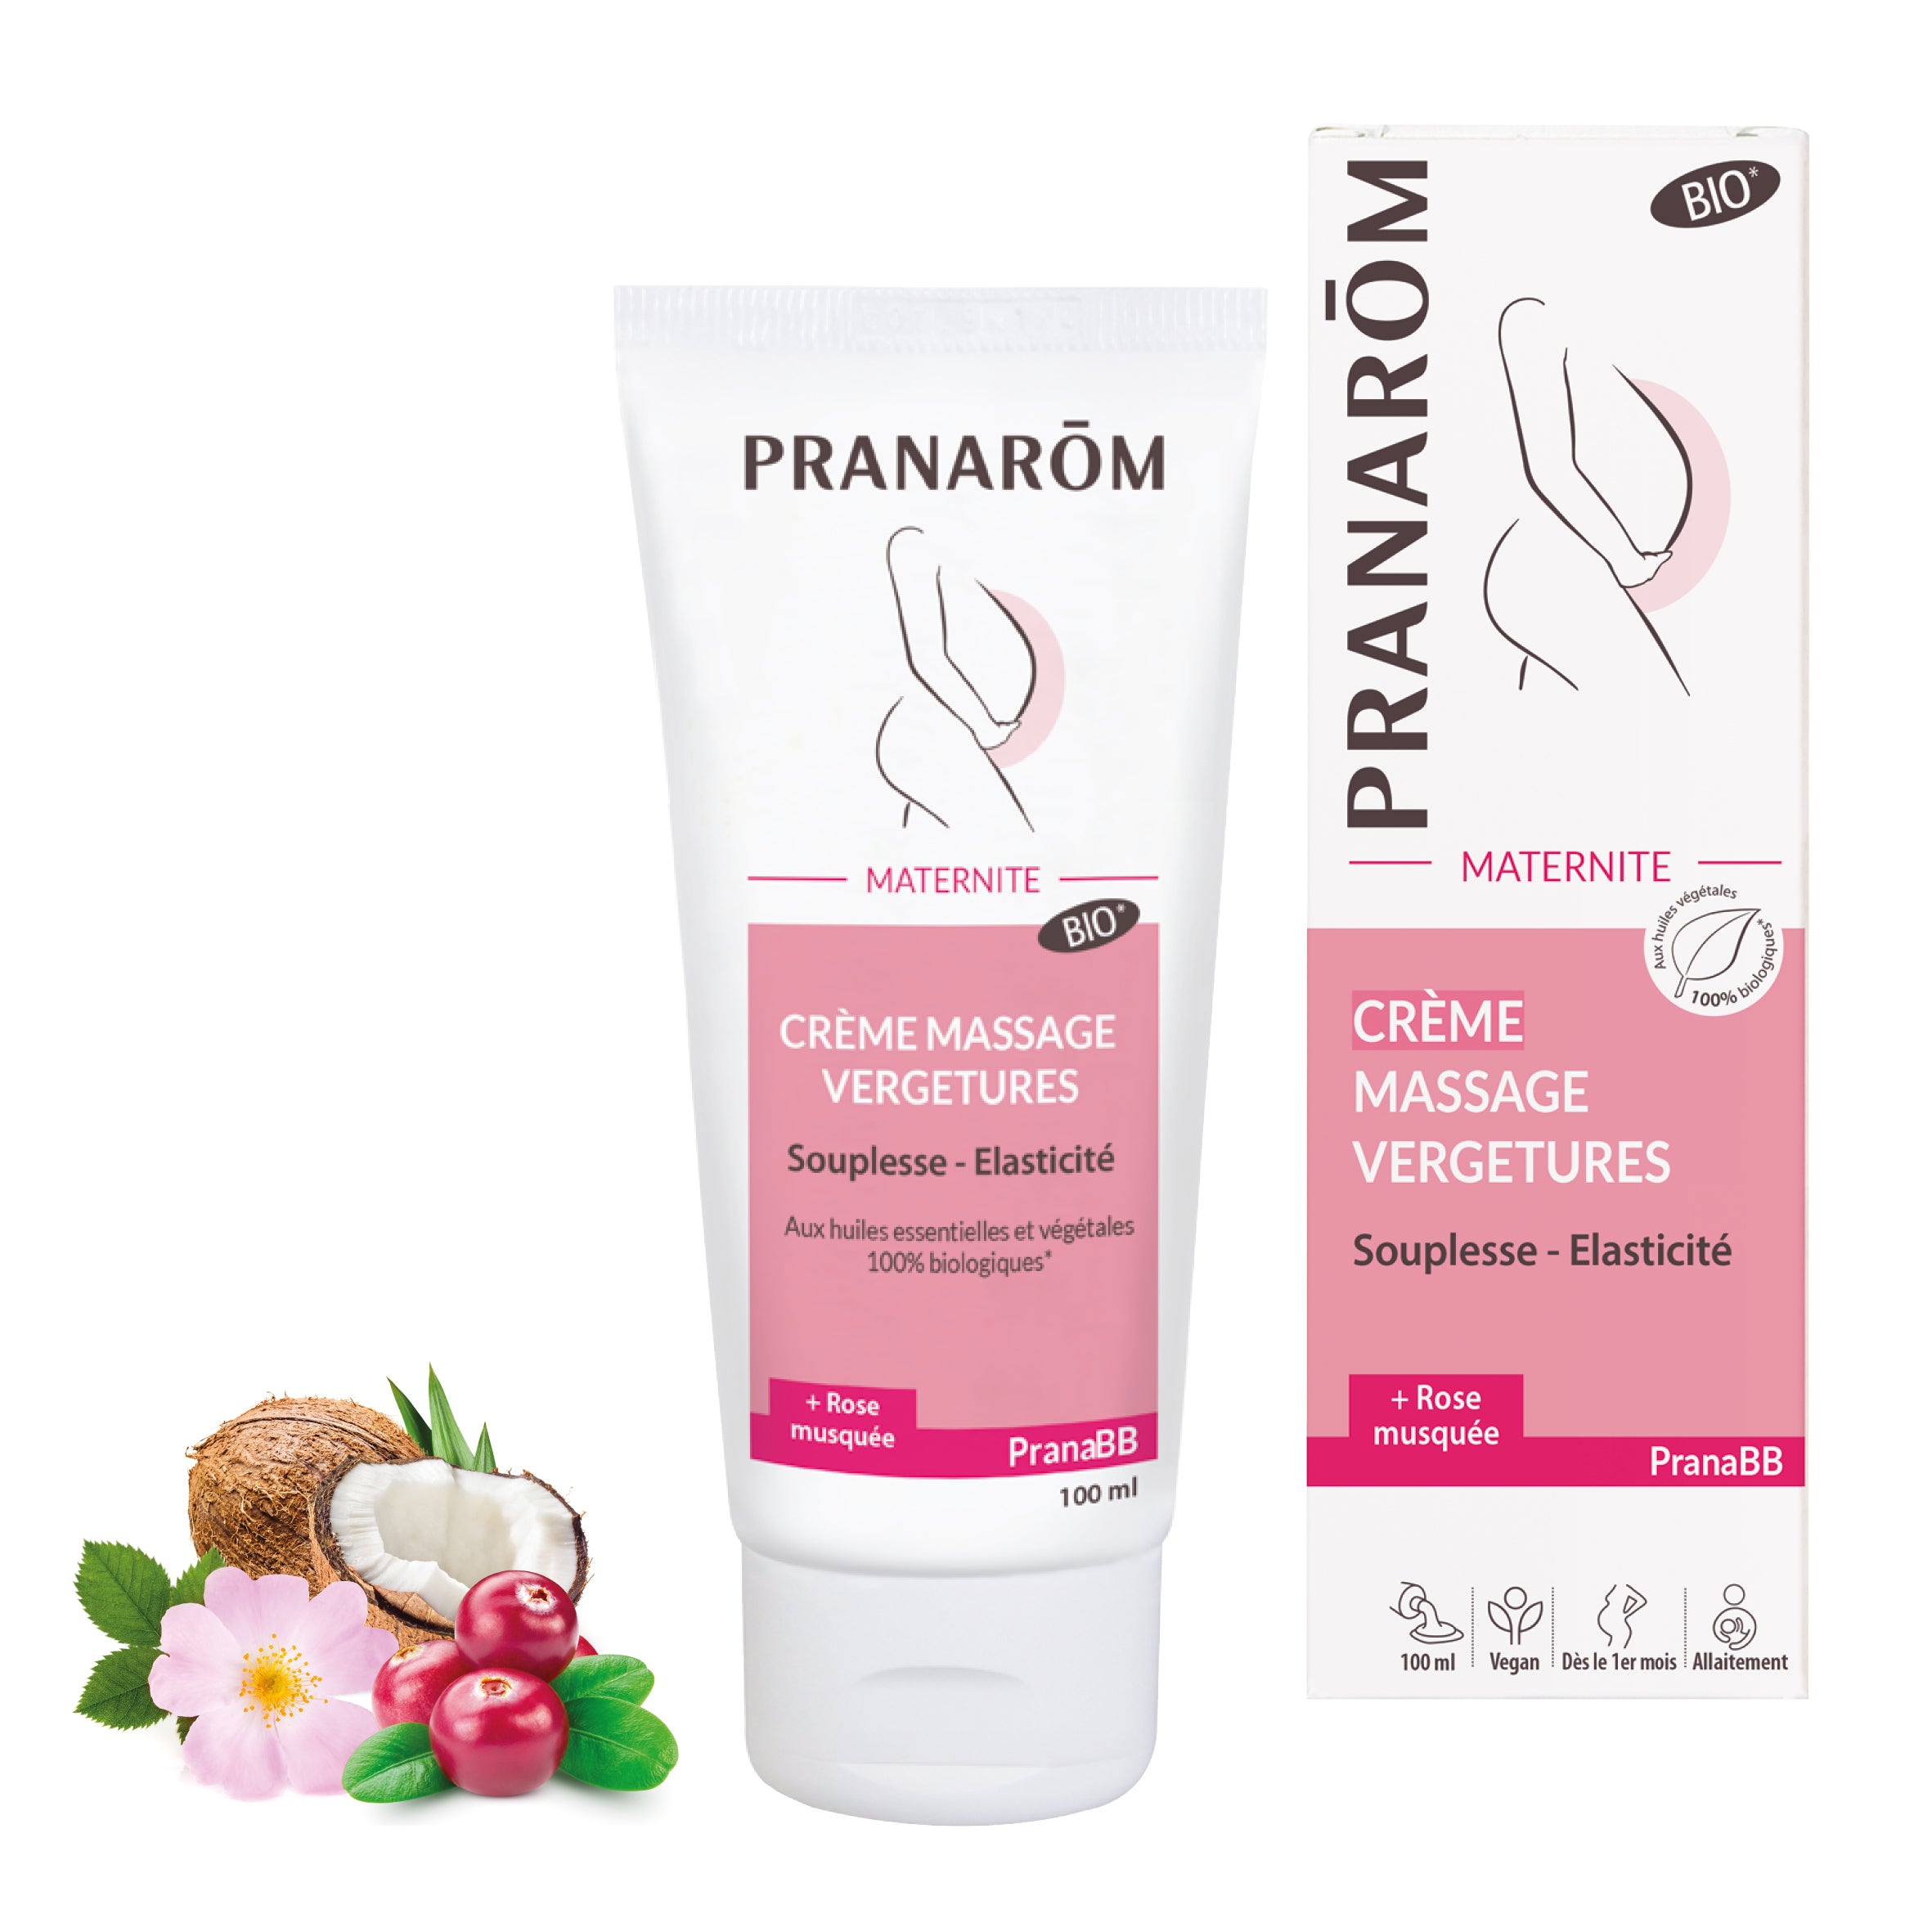 Crème - massage vergetures - Bio | Pranarôm